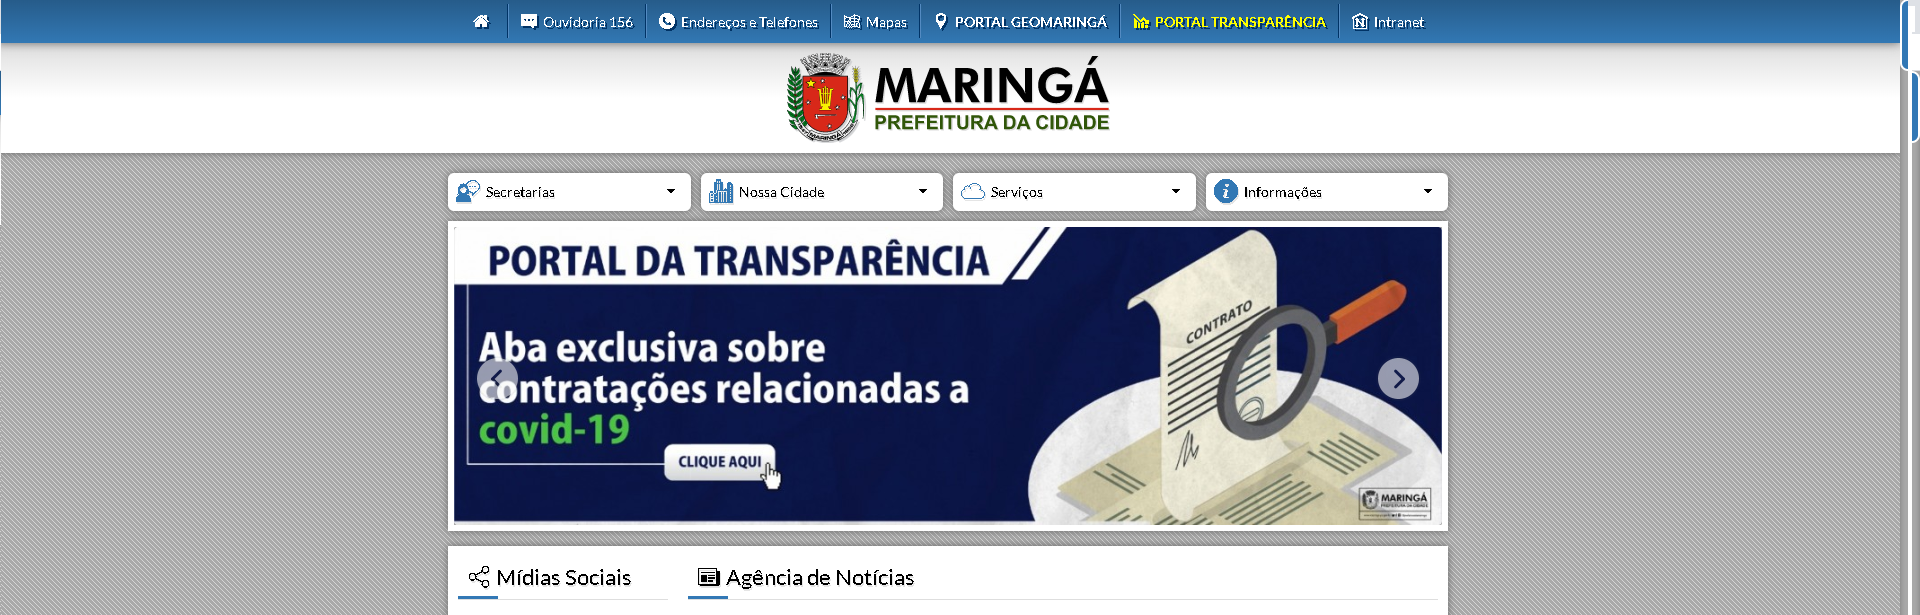 Maringá: Portal da Transparência tem uma aba exclusiva para a covid-19